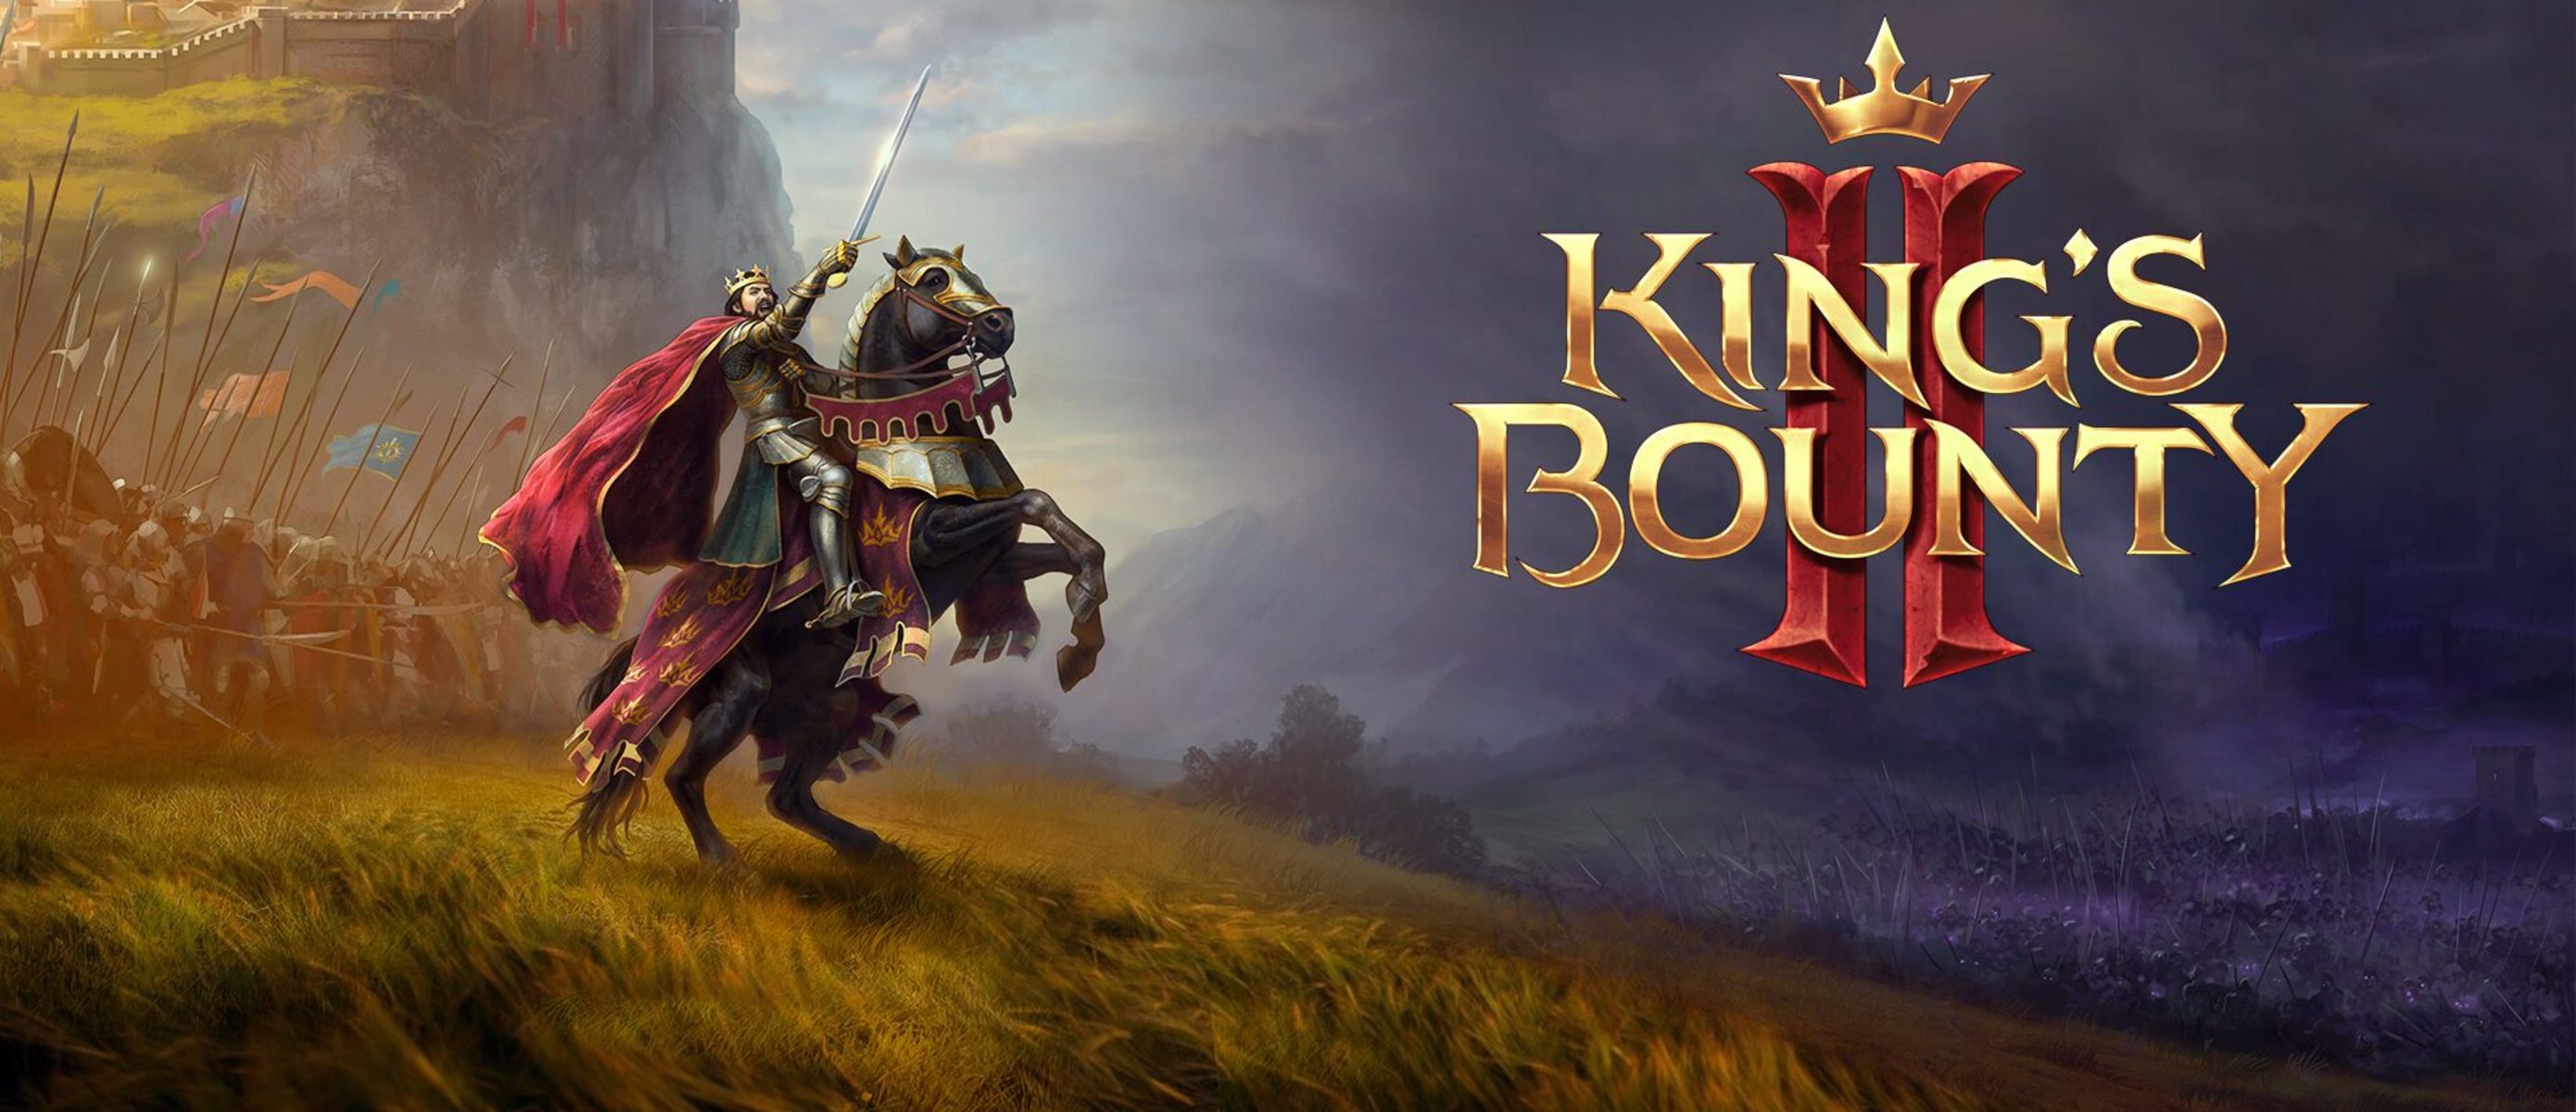 Kings game 2. King s Bounty 2. Kings Bounty 2 обложка. King’s Bounty II обложка. Игра Король Баунти 2.